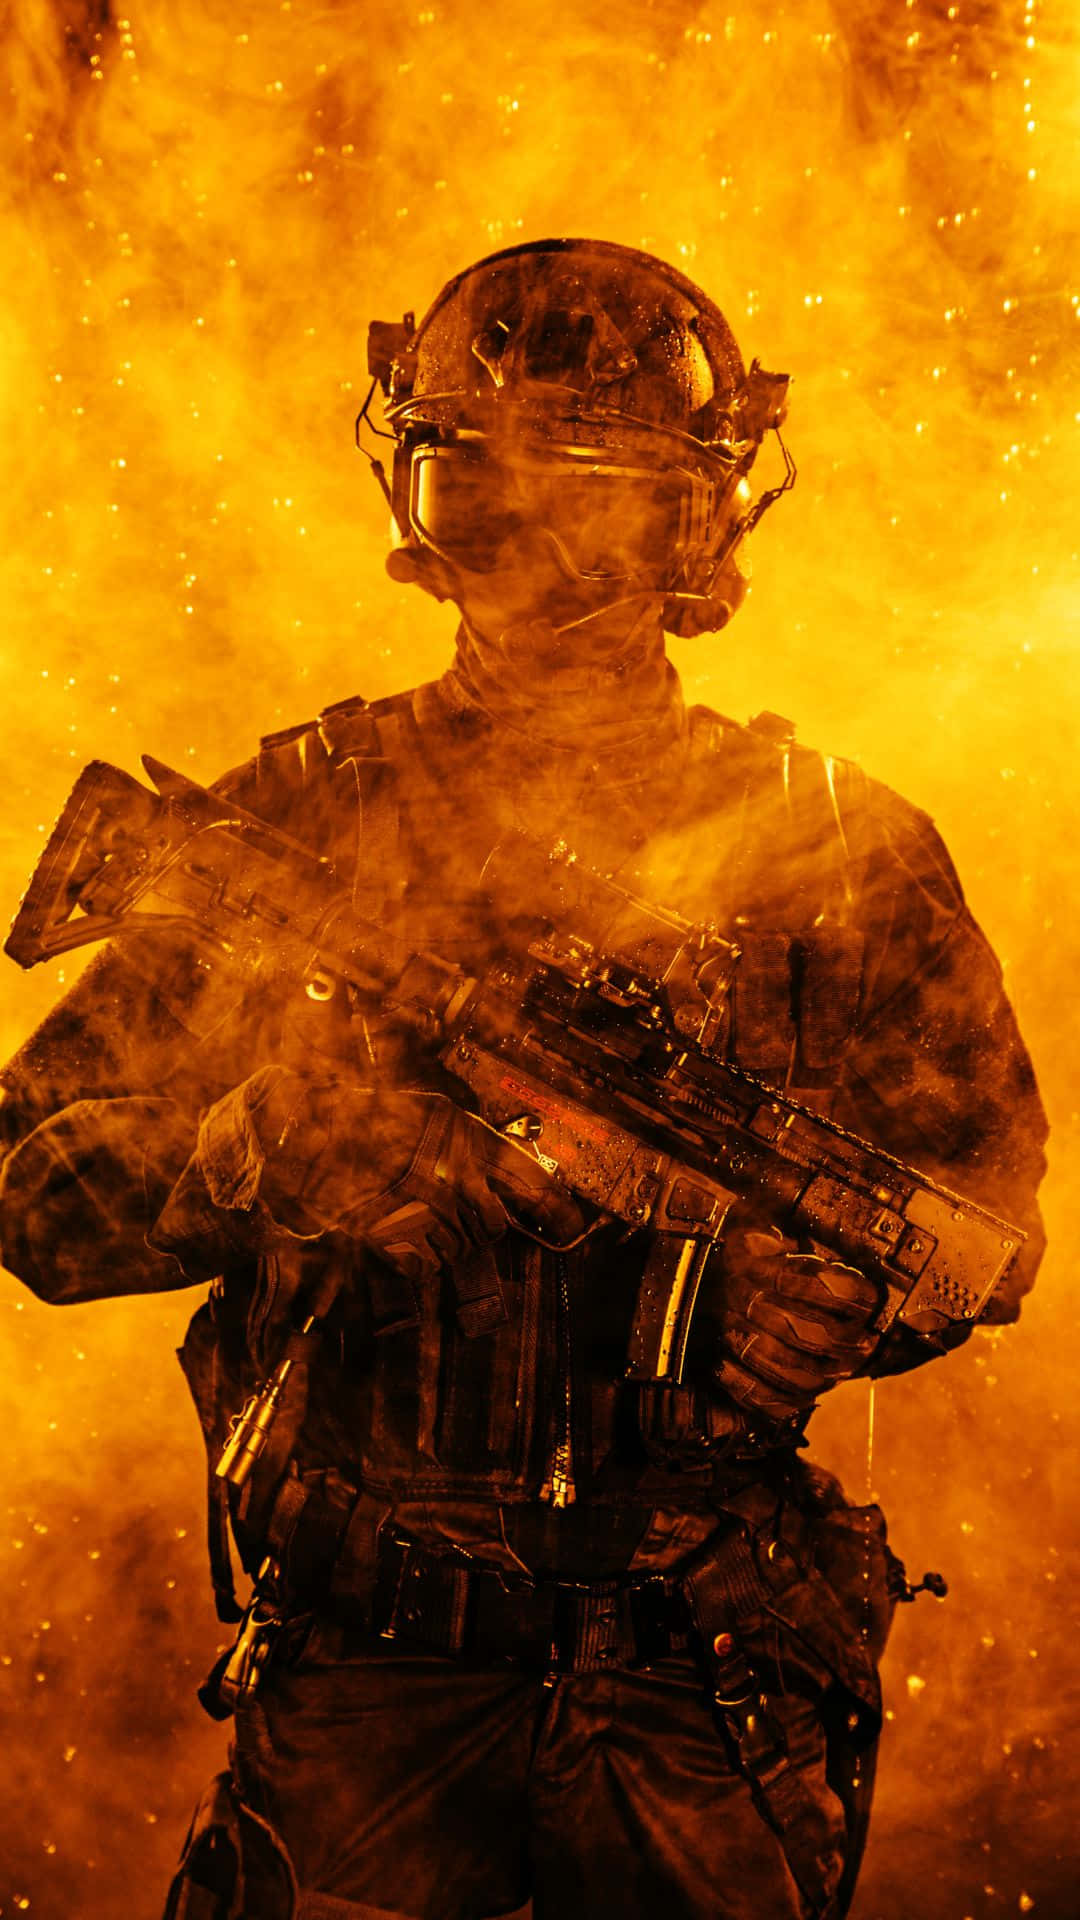 Policialda Swat No Escritório De Battlefield 5. Papel de Parede